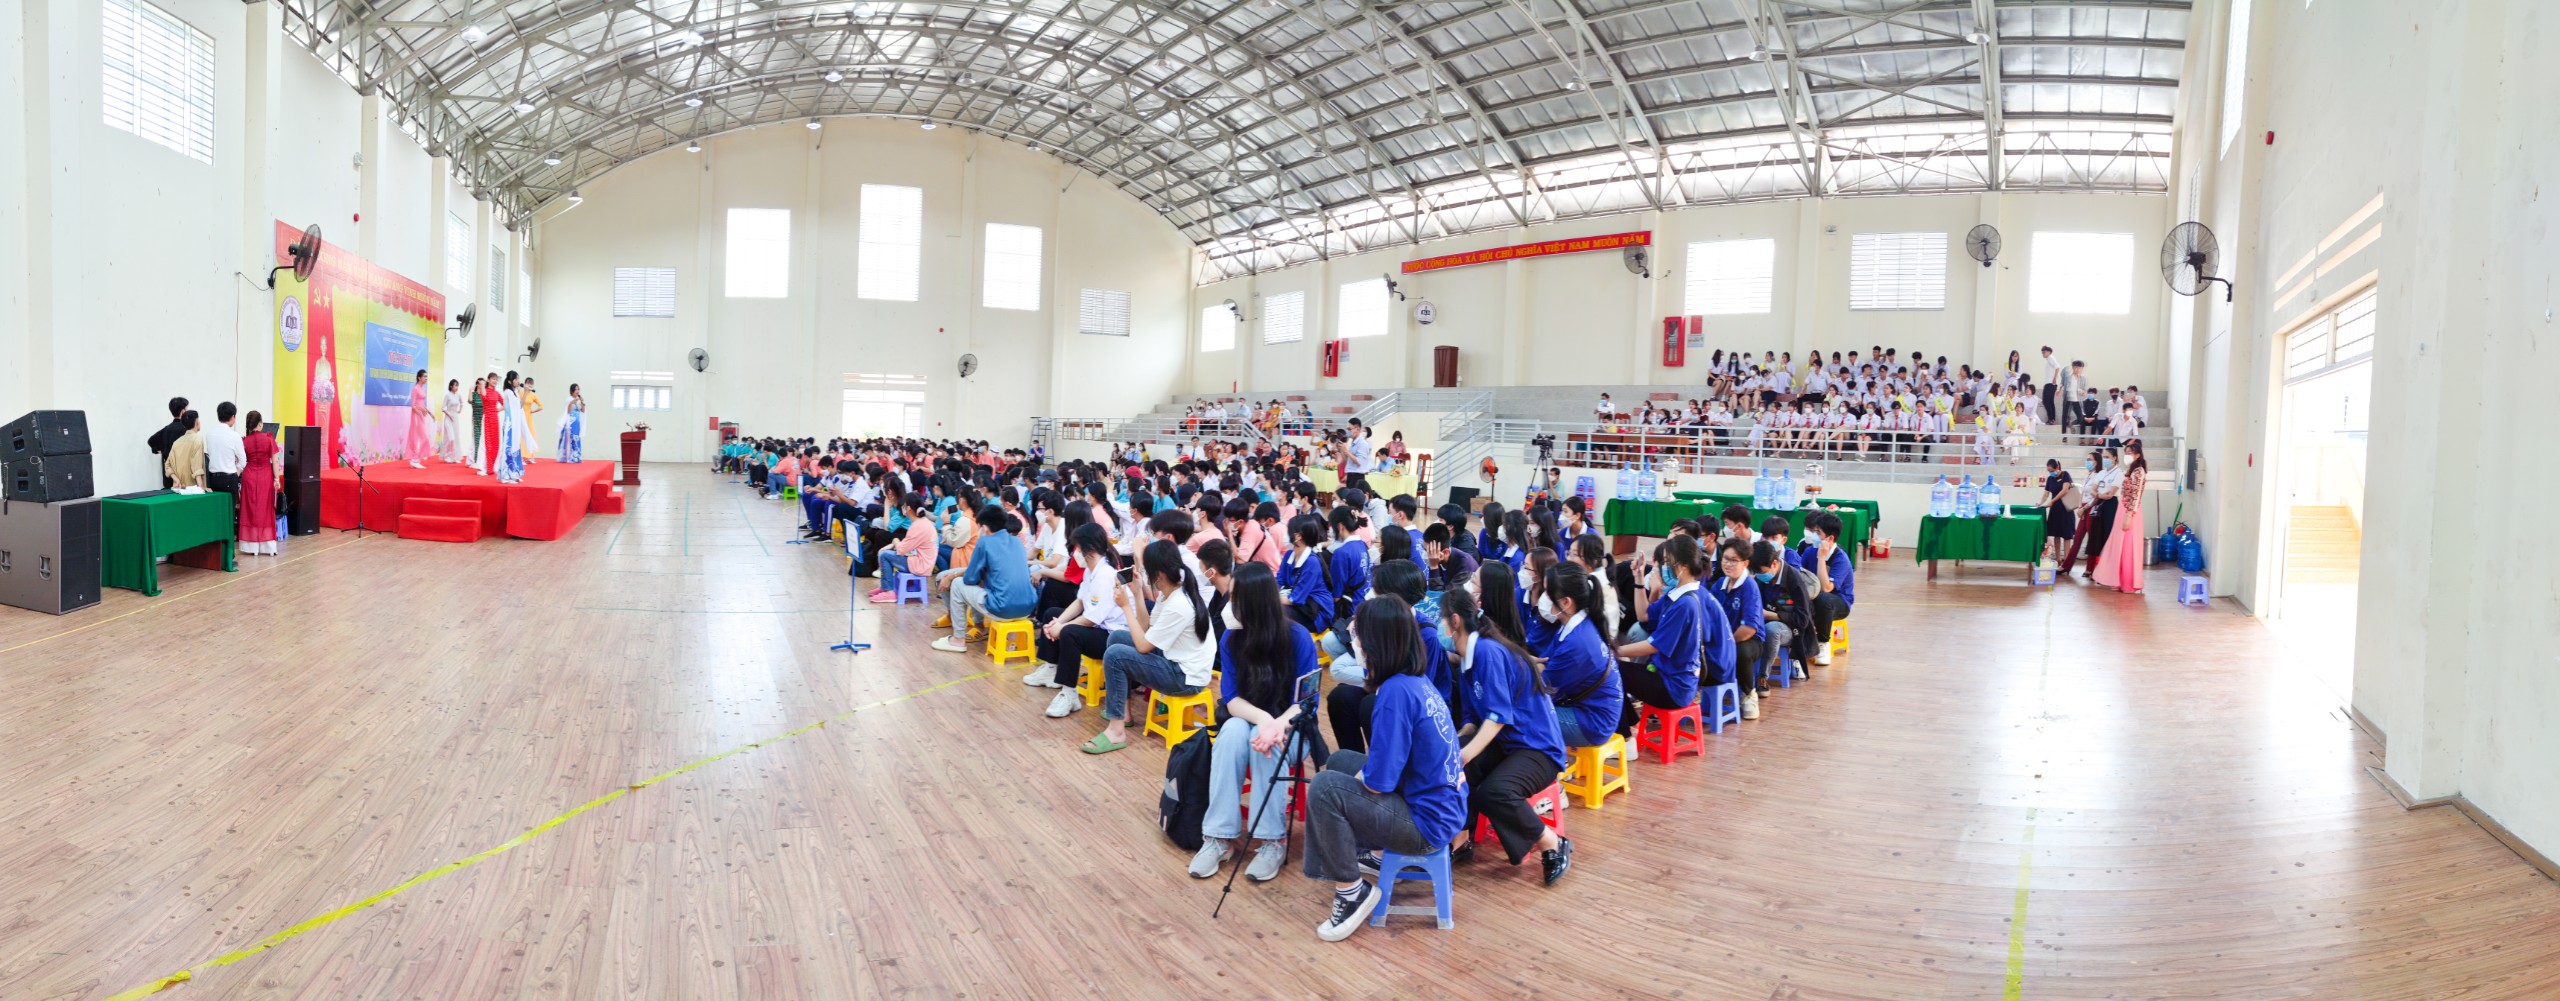 Trường Trung cấp Kinh tế Khánh Hòa tổ chức Ngày hội tư vấn tuyển sinh Giáo dục nghề nghiệp năm 2022